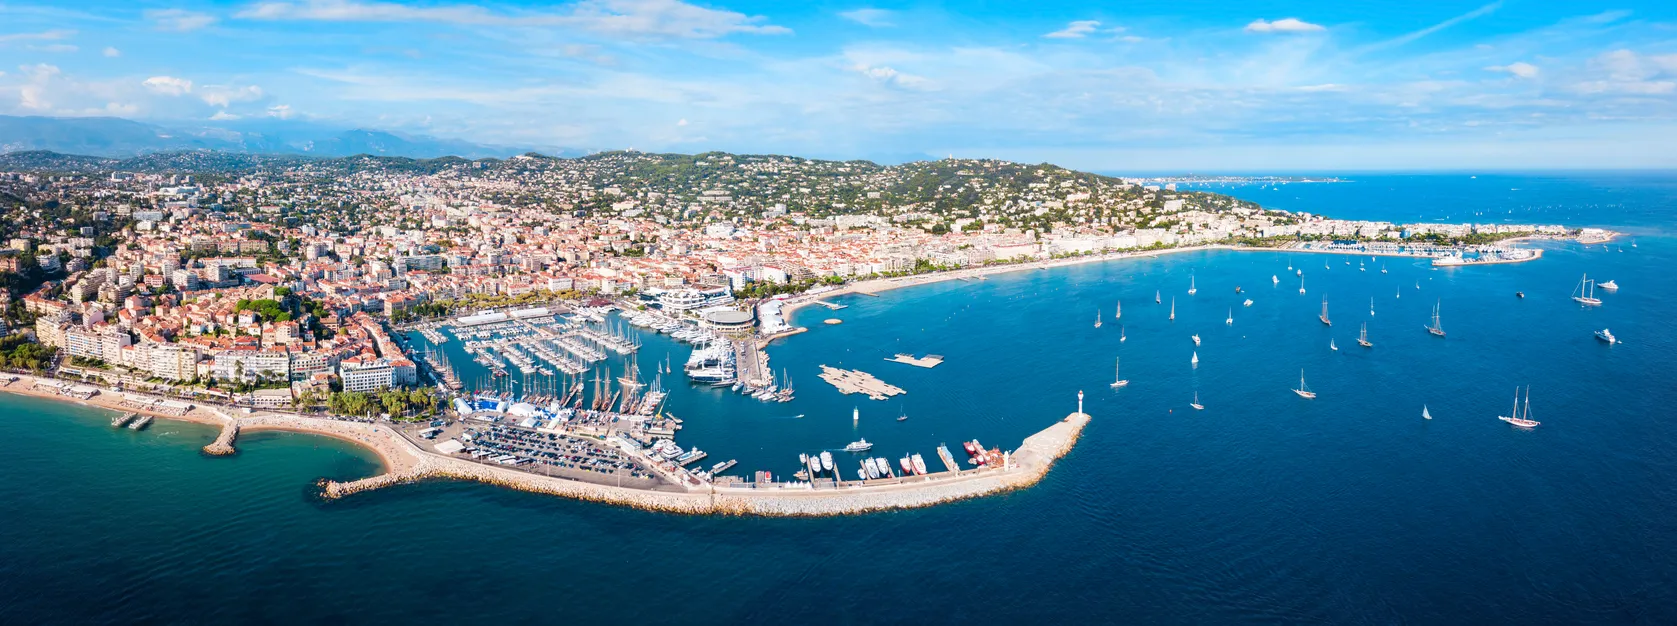 vue panoramique de Cannes, Provence-Côte d'azur © iStock / saiko3p